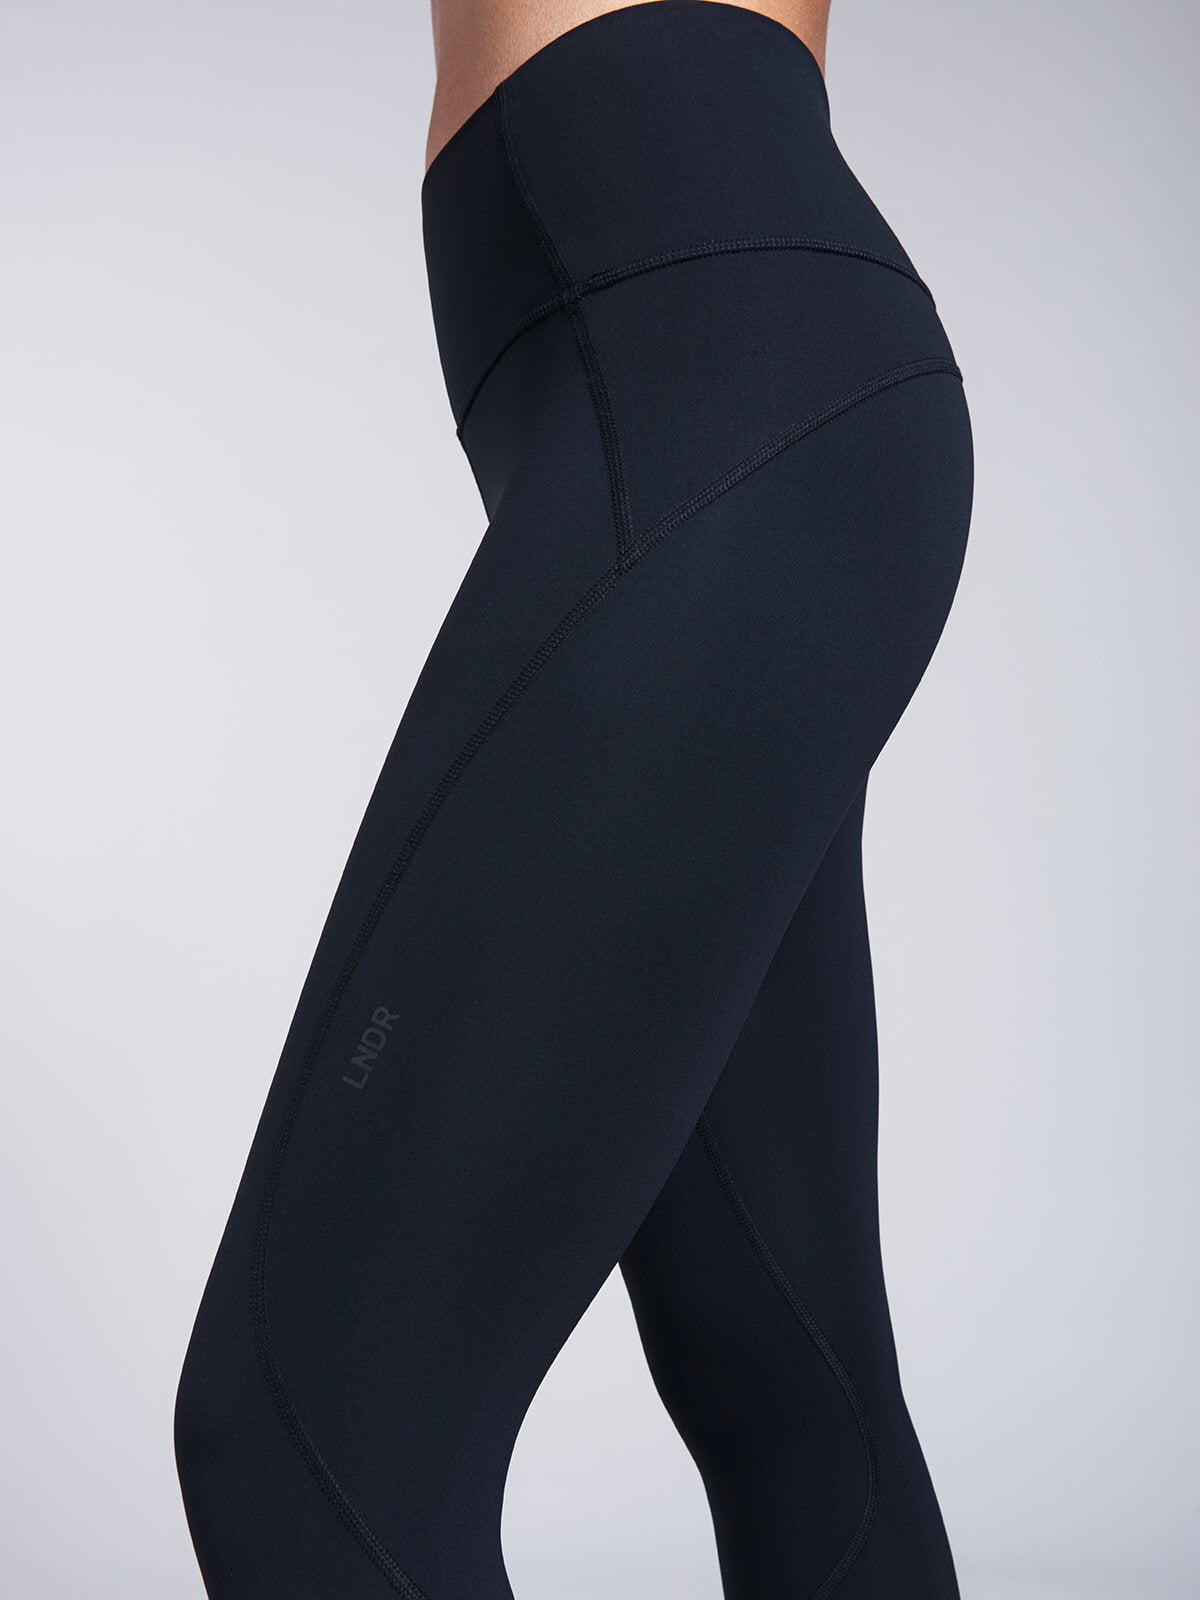 Electrify your wardrobewith our new @lndr leggings #mysportsedit